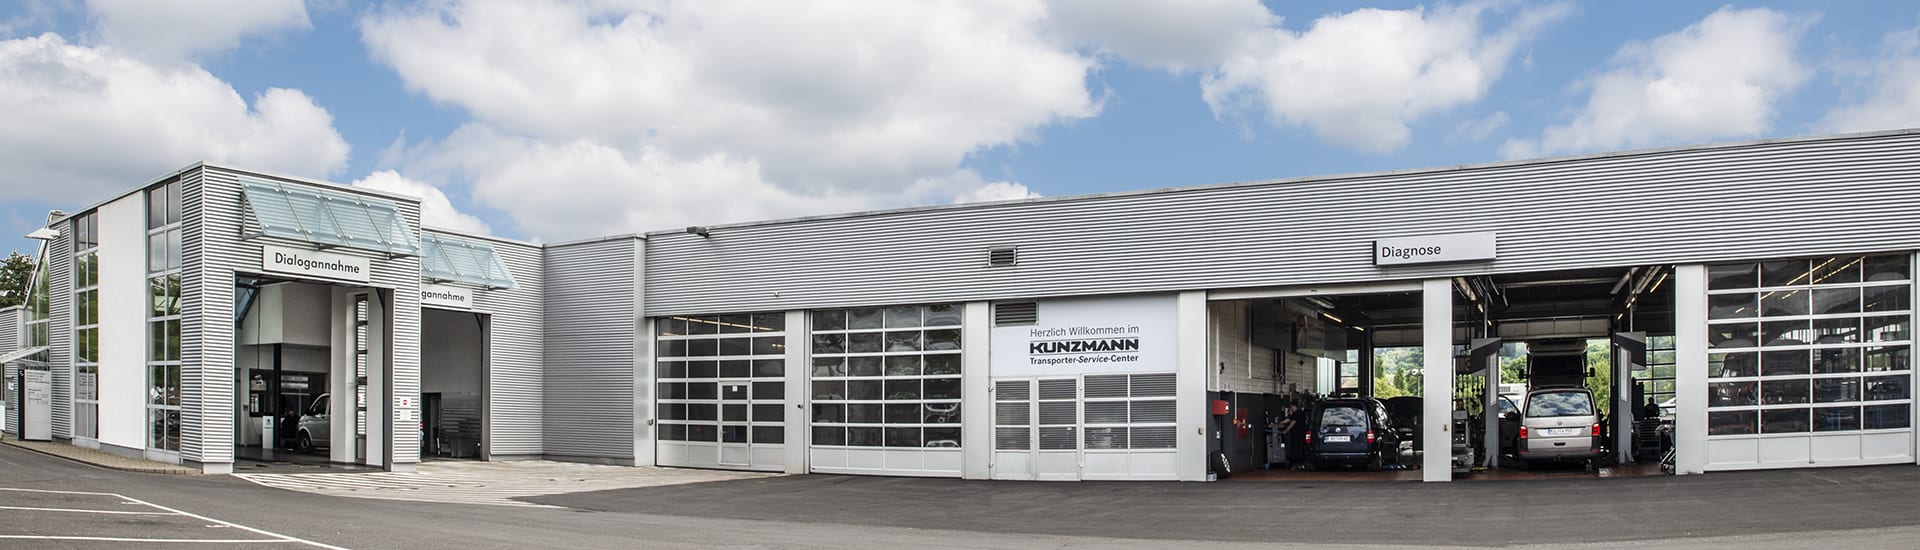 Dashcam-Einbau im Autohaus Kunzmann in Aschaffenburg-Nilkheim